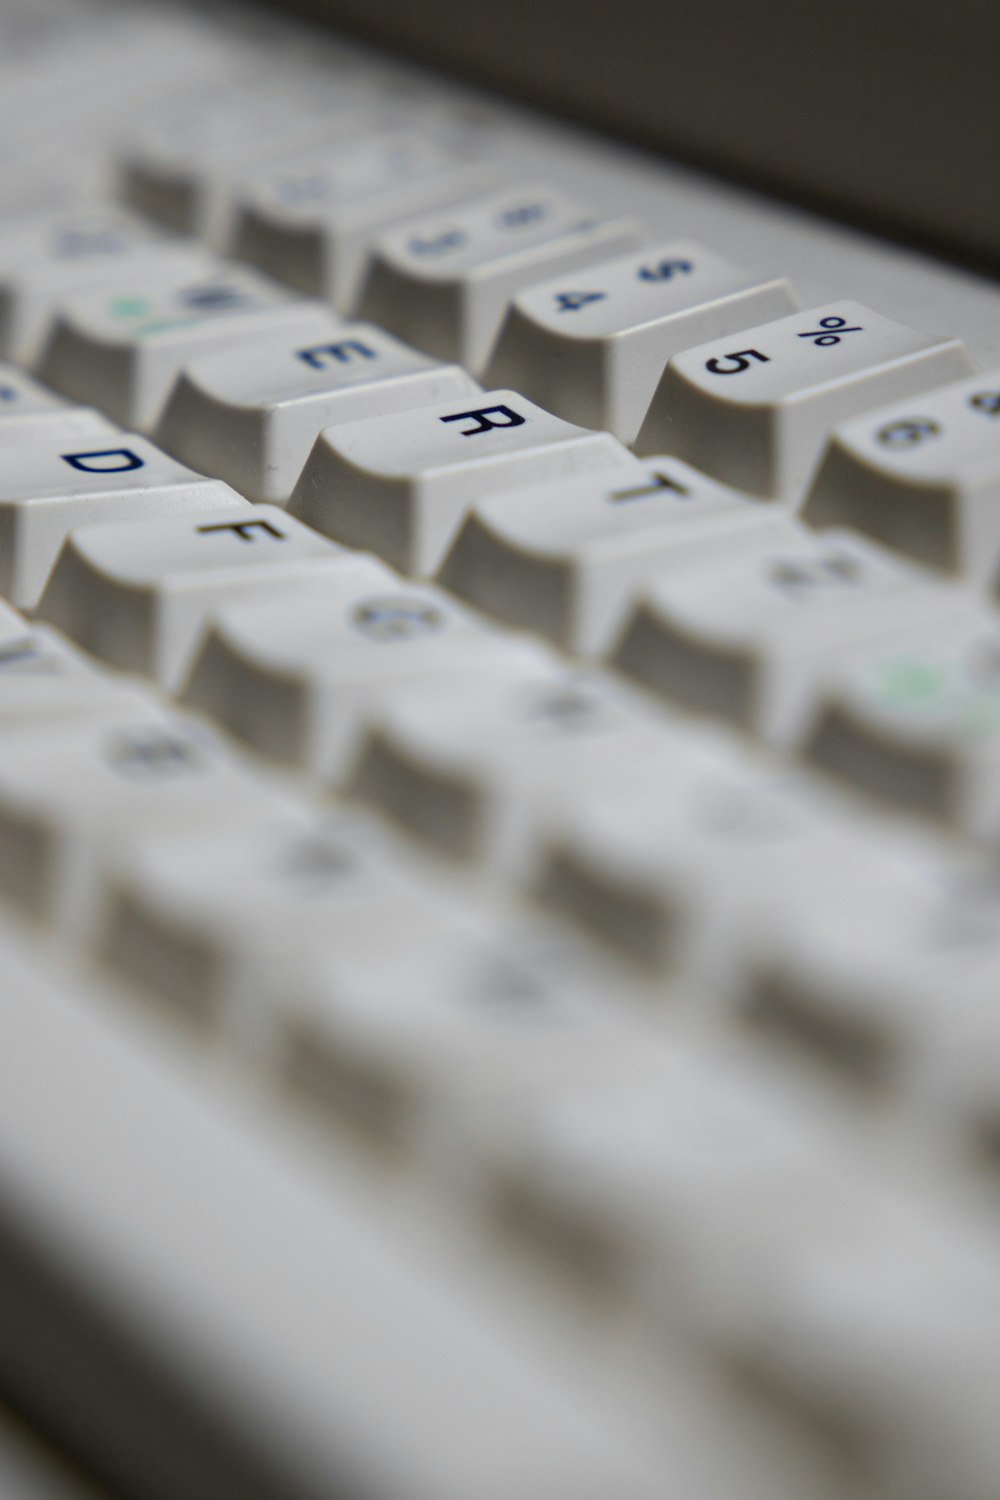 white keyboard